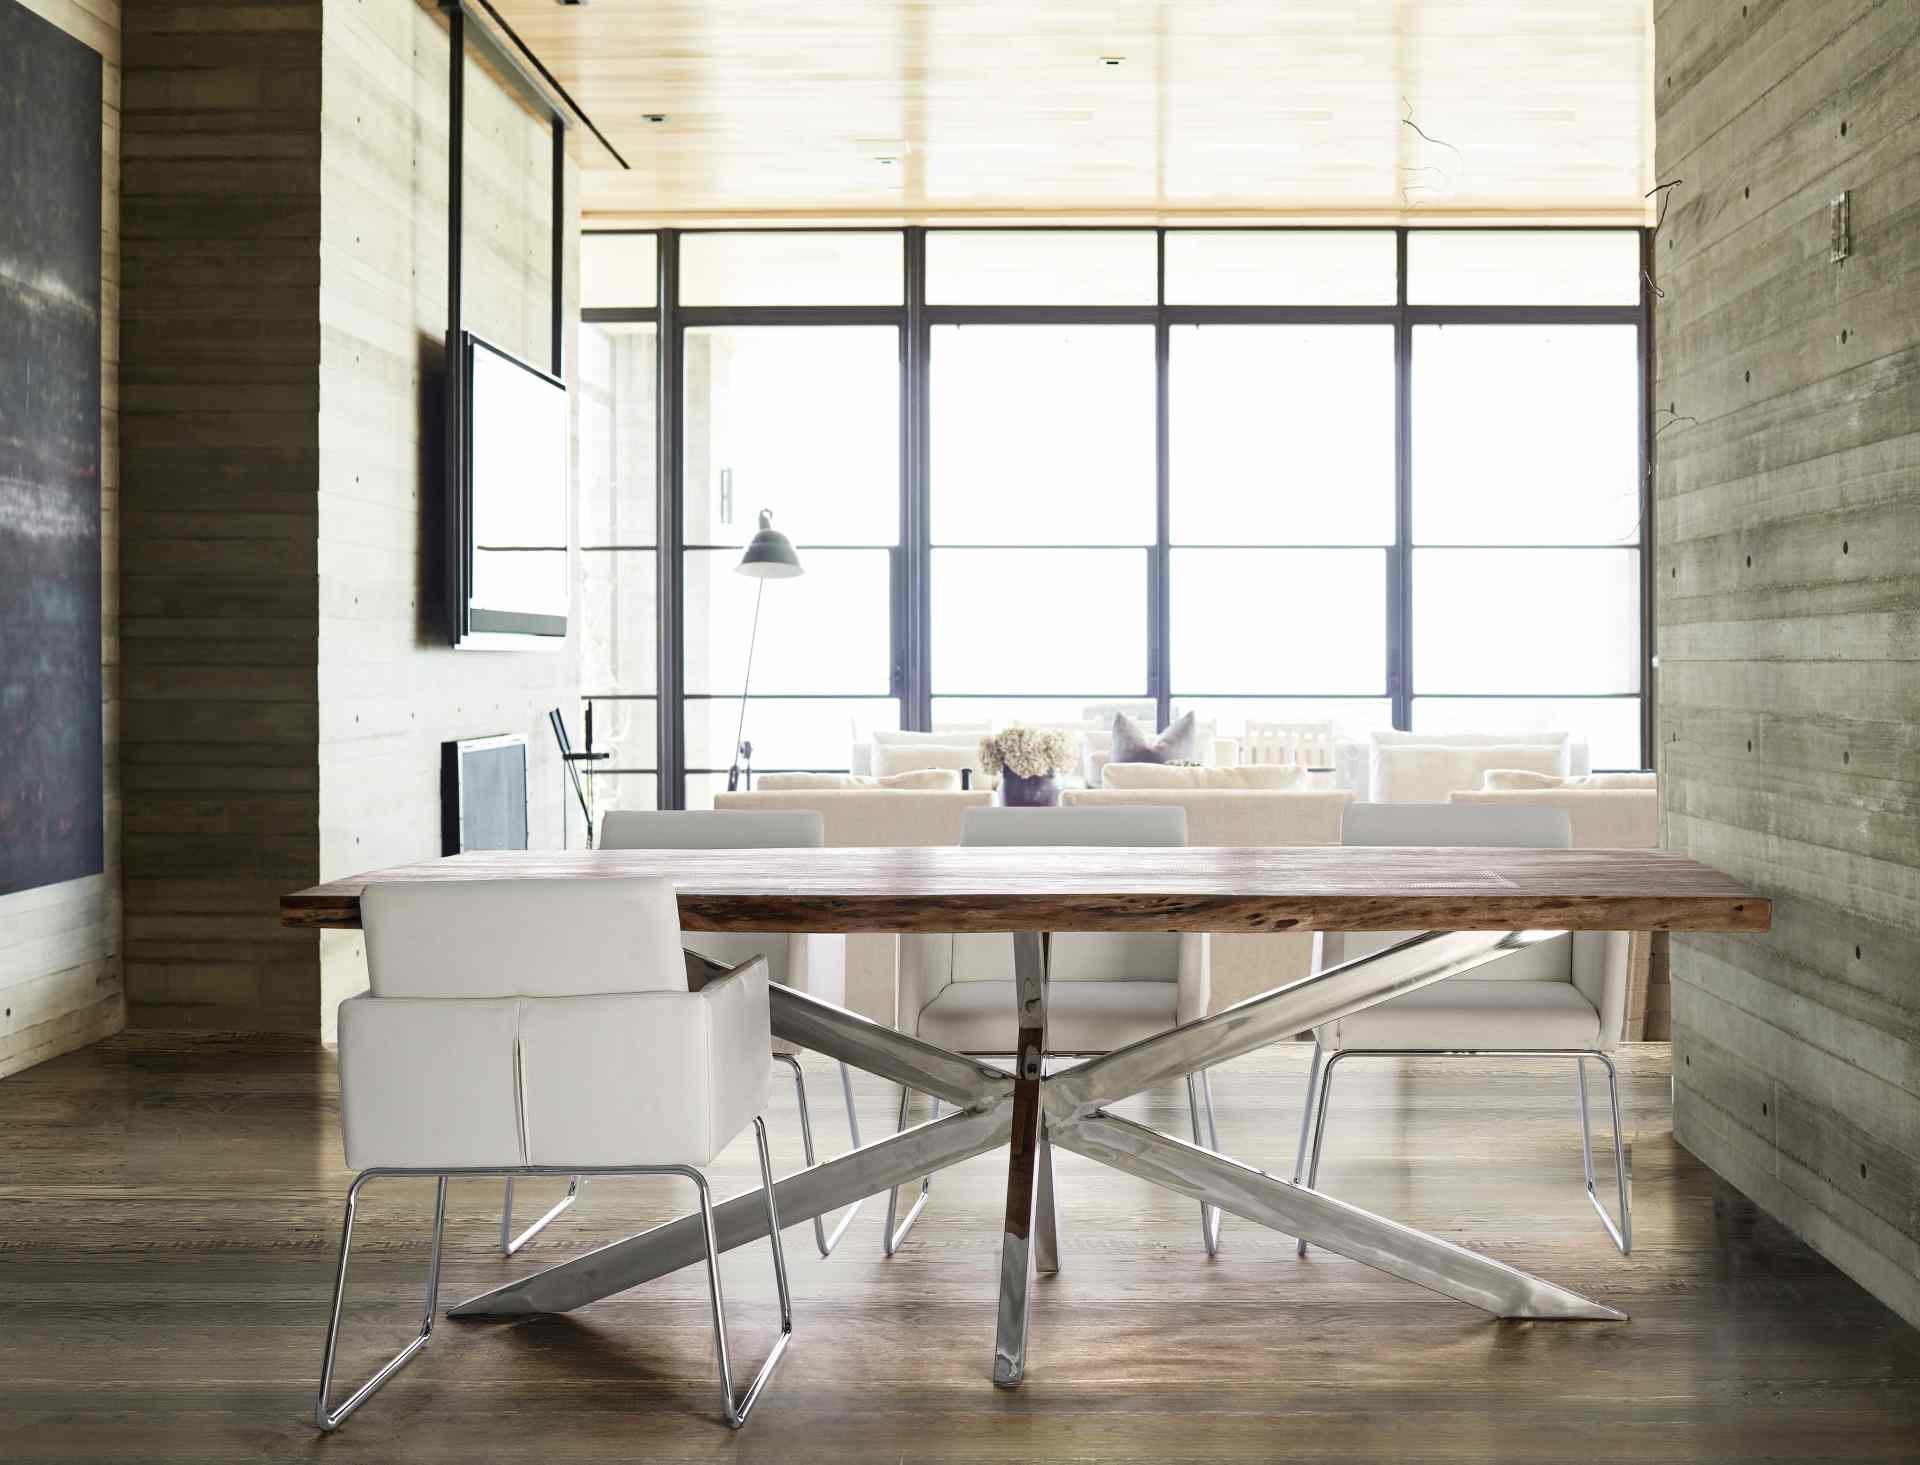 Der Esstisch Arkansas überzeugt mit seinem moderndem Design gefertigt wurde er aus Akazienholz, welches einen natürlichen Farbton besitzt. Das Gestell des Tisches ist aus Metall und ist in einer silbernen Farbe. Der Tisch besitzt eine Breite von 220 cm.